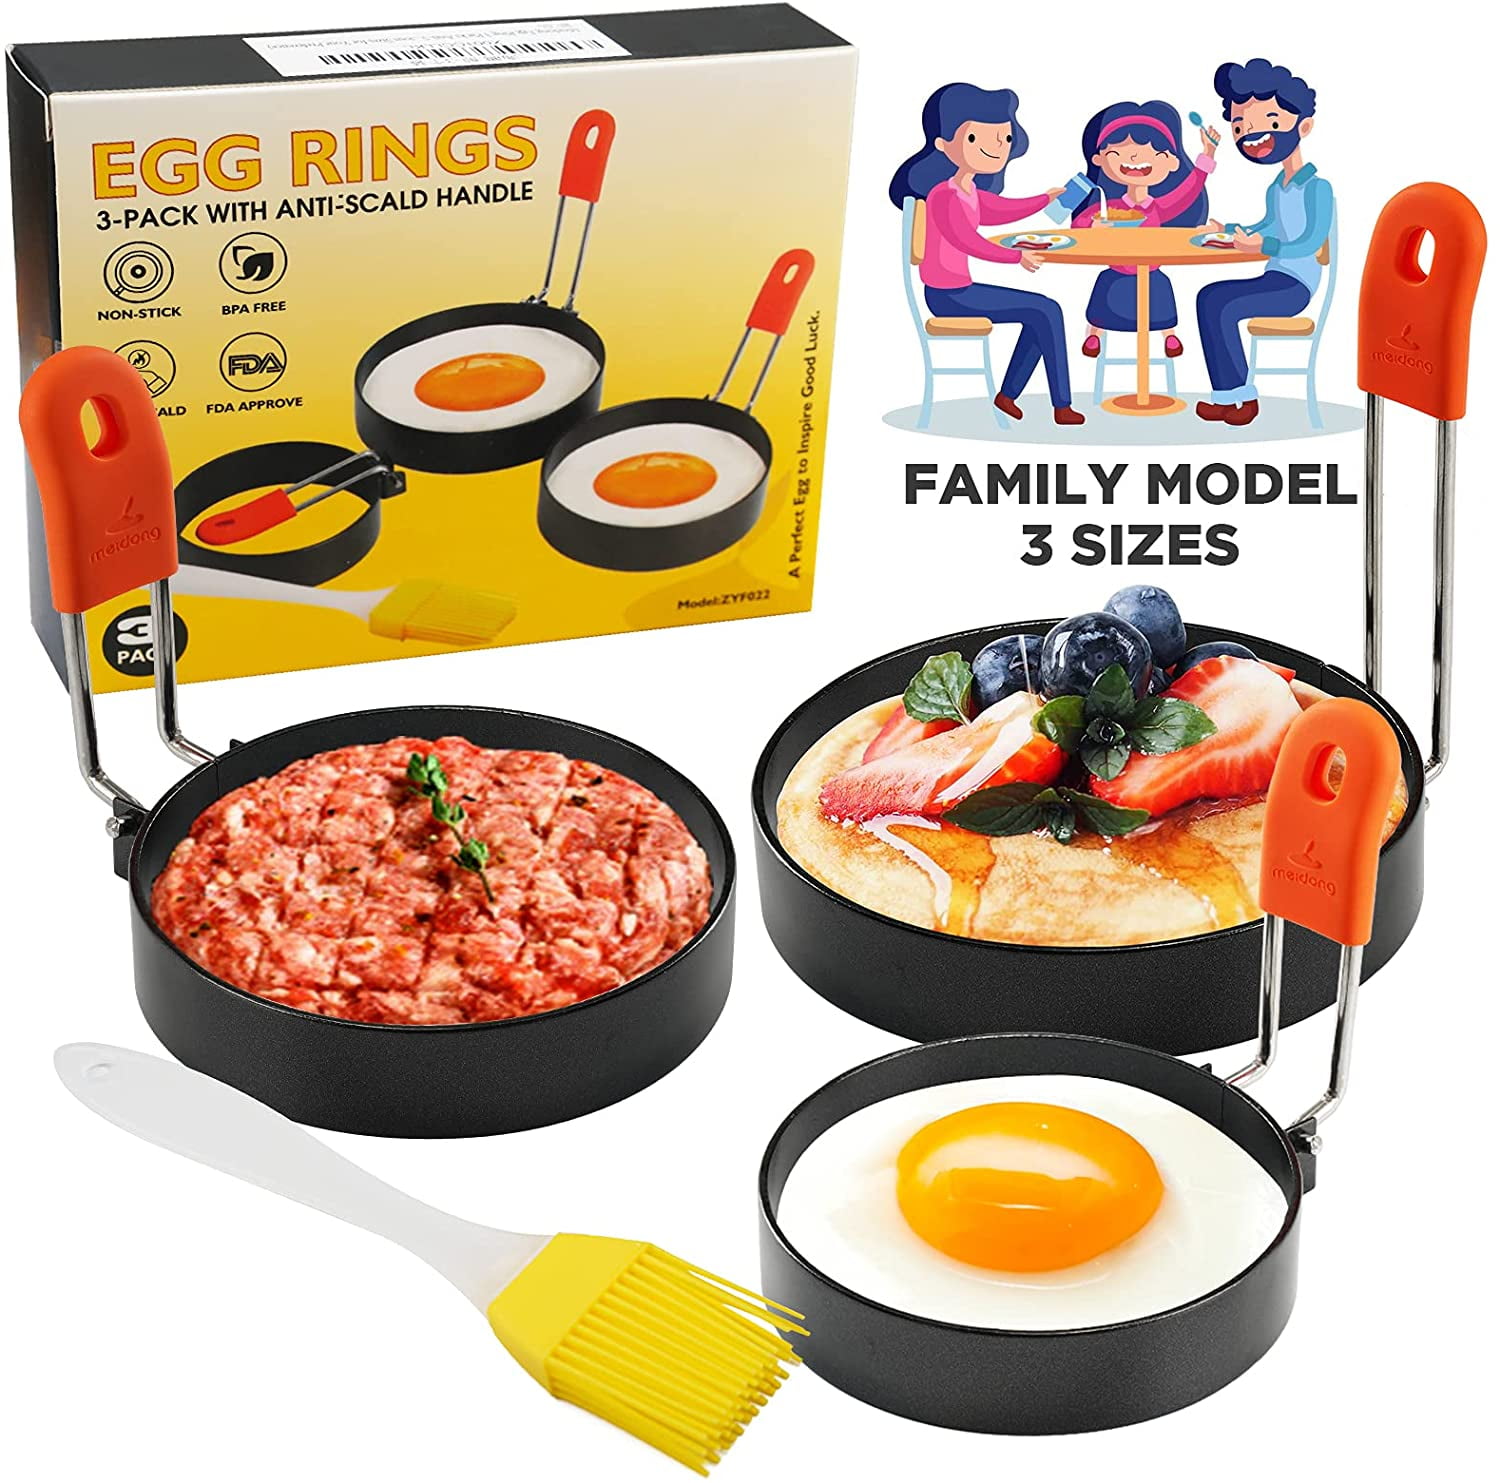 Round Egg Ring Egg Mold for Cooking Stainless Steel 2 Pack hanmir Egg Rings for Frying Eggs